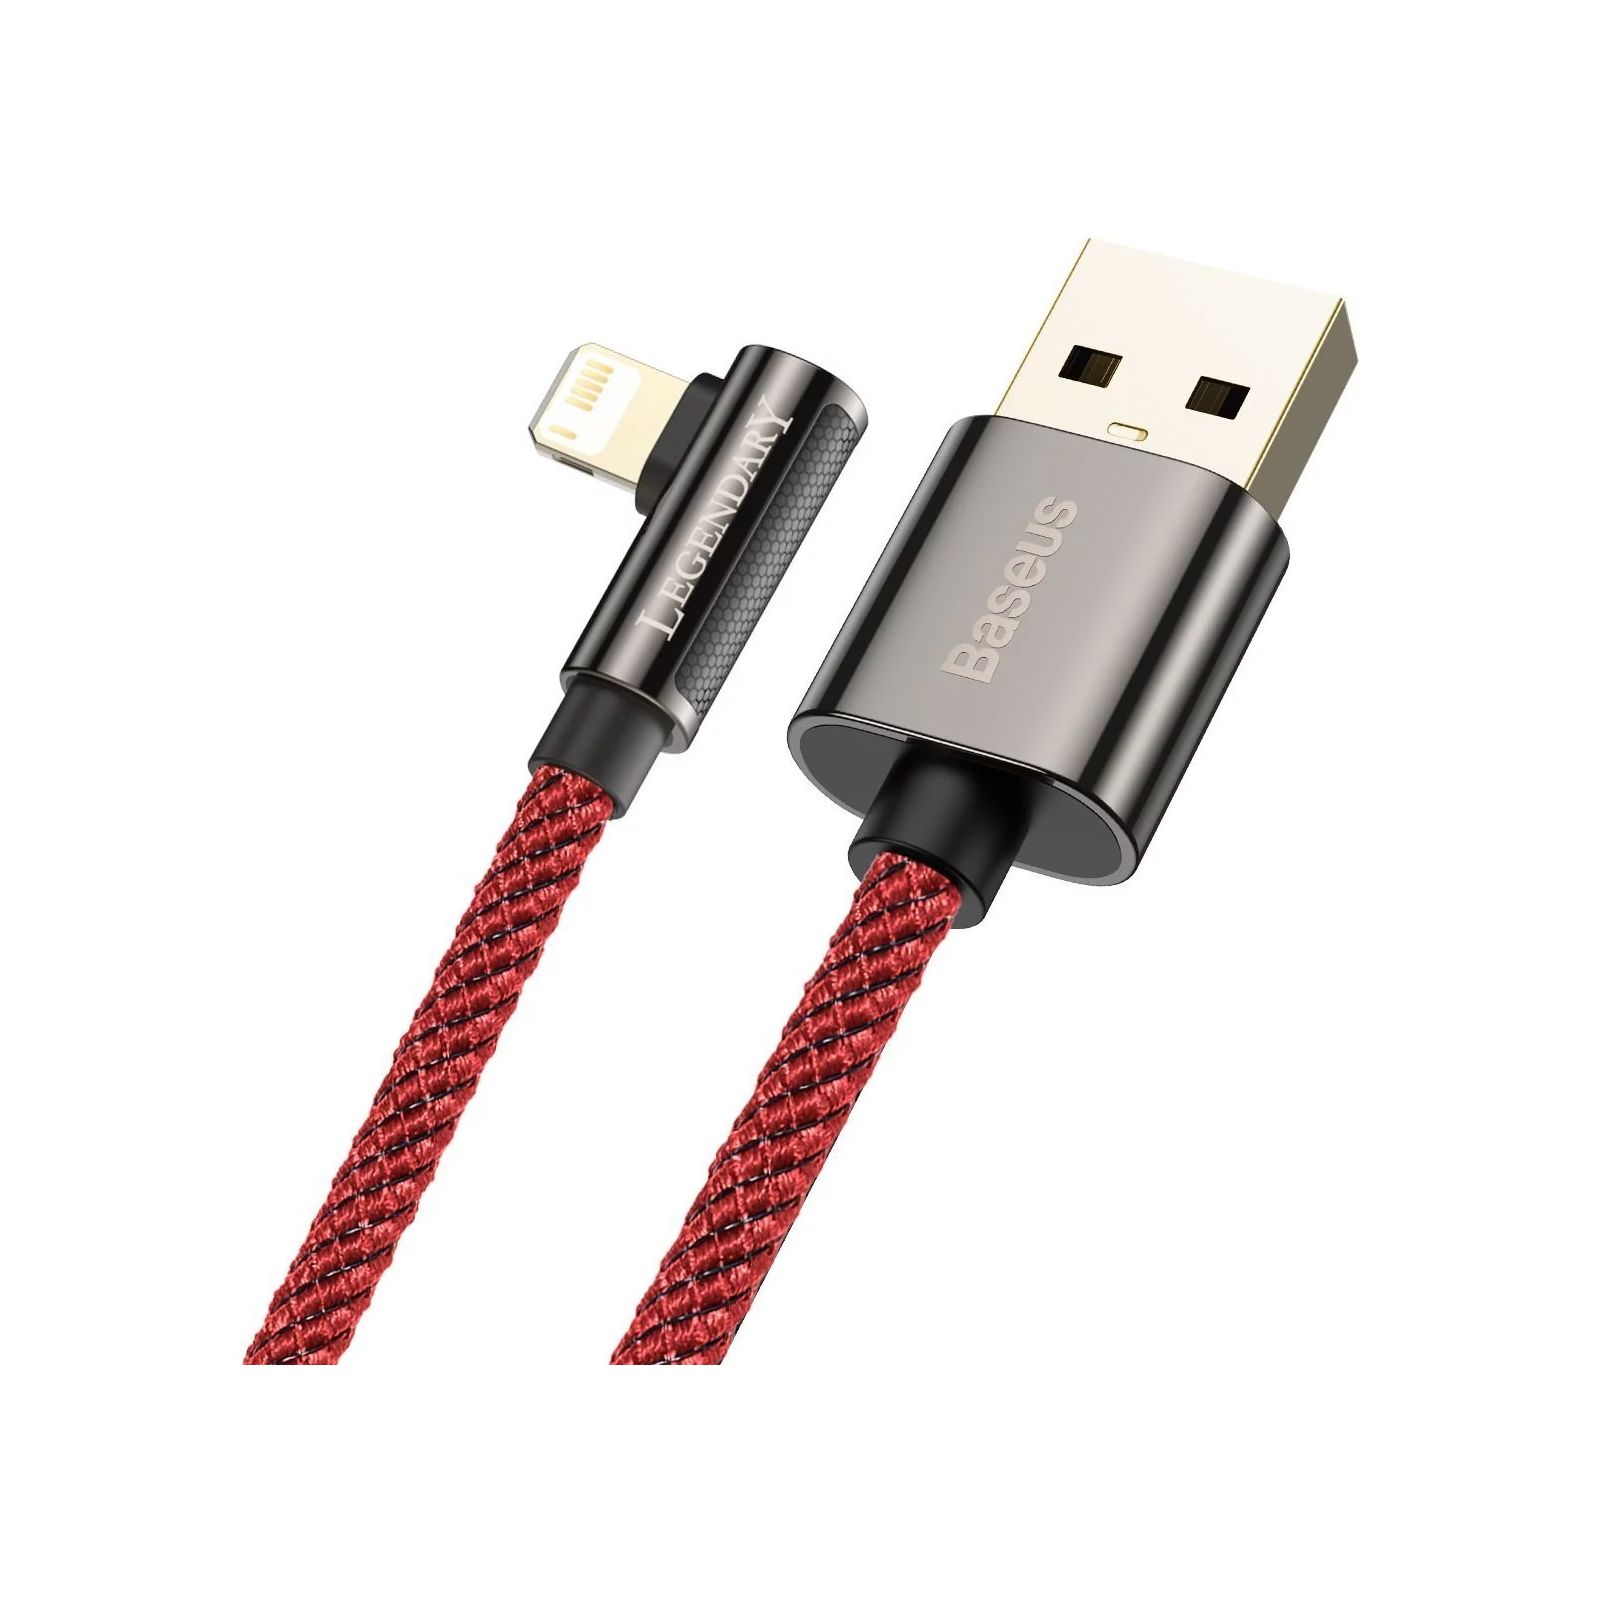 Дата кабель USB 2.0 AM to Lightning 2.0m CACS 2.4A 90 Legend Series Elbow Red Baseus (CACS000109) изображение 3